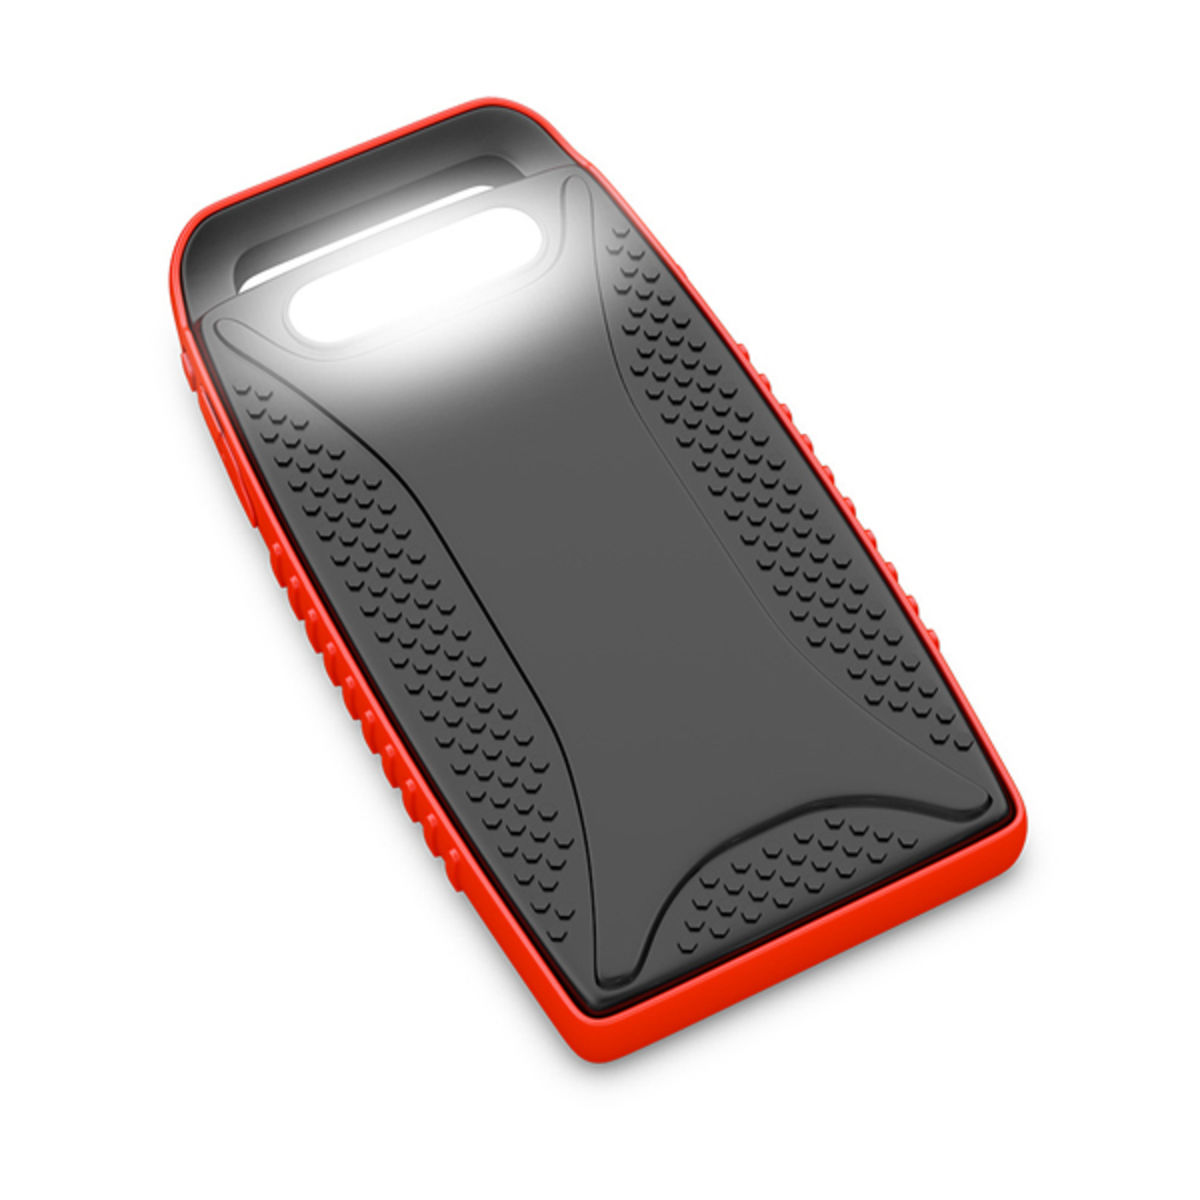 Batterie externe solaire X-Moove Solargo Pocket 15000 mAh - 2 ports USB